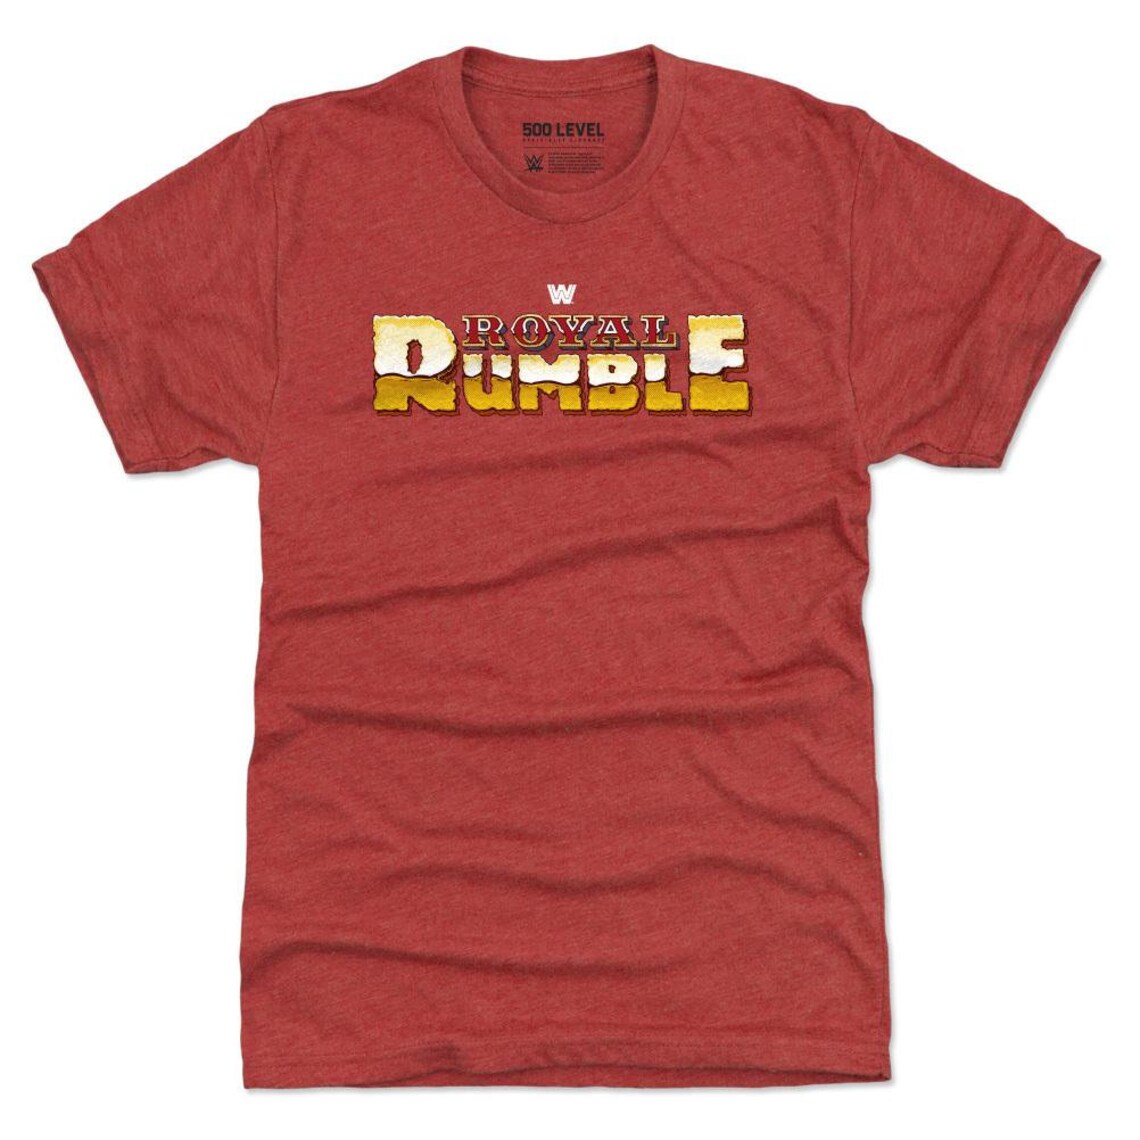 Royal Rumble Men's Premium T-Shirt Royal Rumble WWE | Etsy